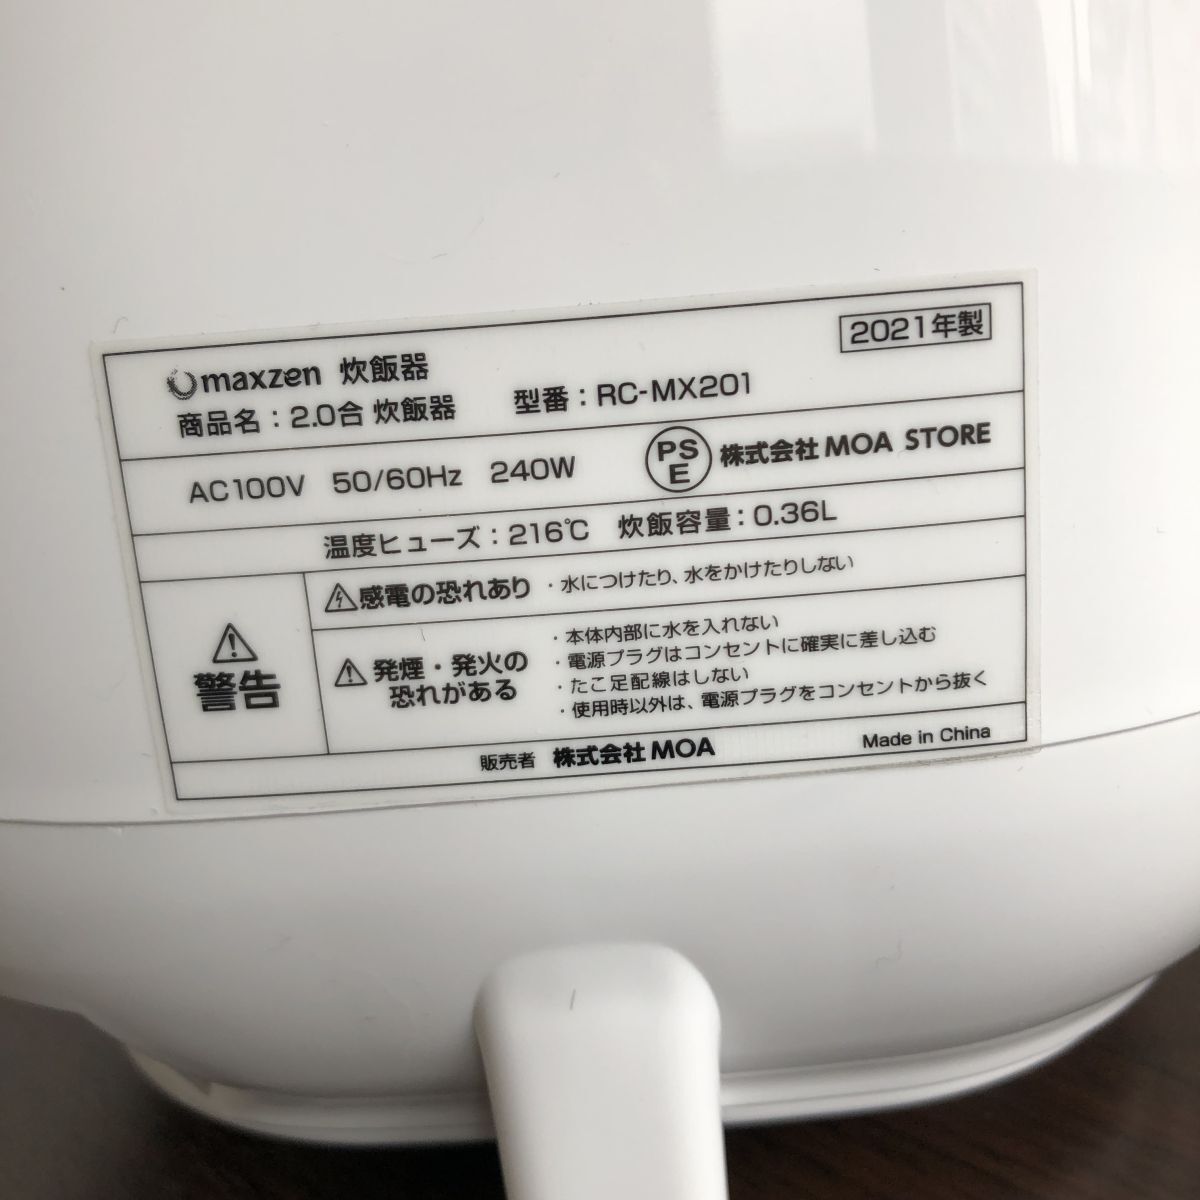 ^ электризация ok MAXZEN 2021 год производства рисоварка 2. фтор внутри котел Mini рис кухонная утварь /43-2-50